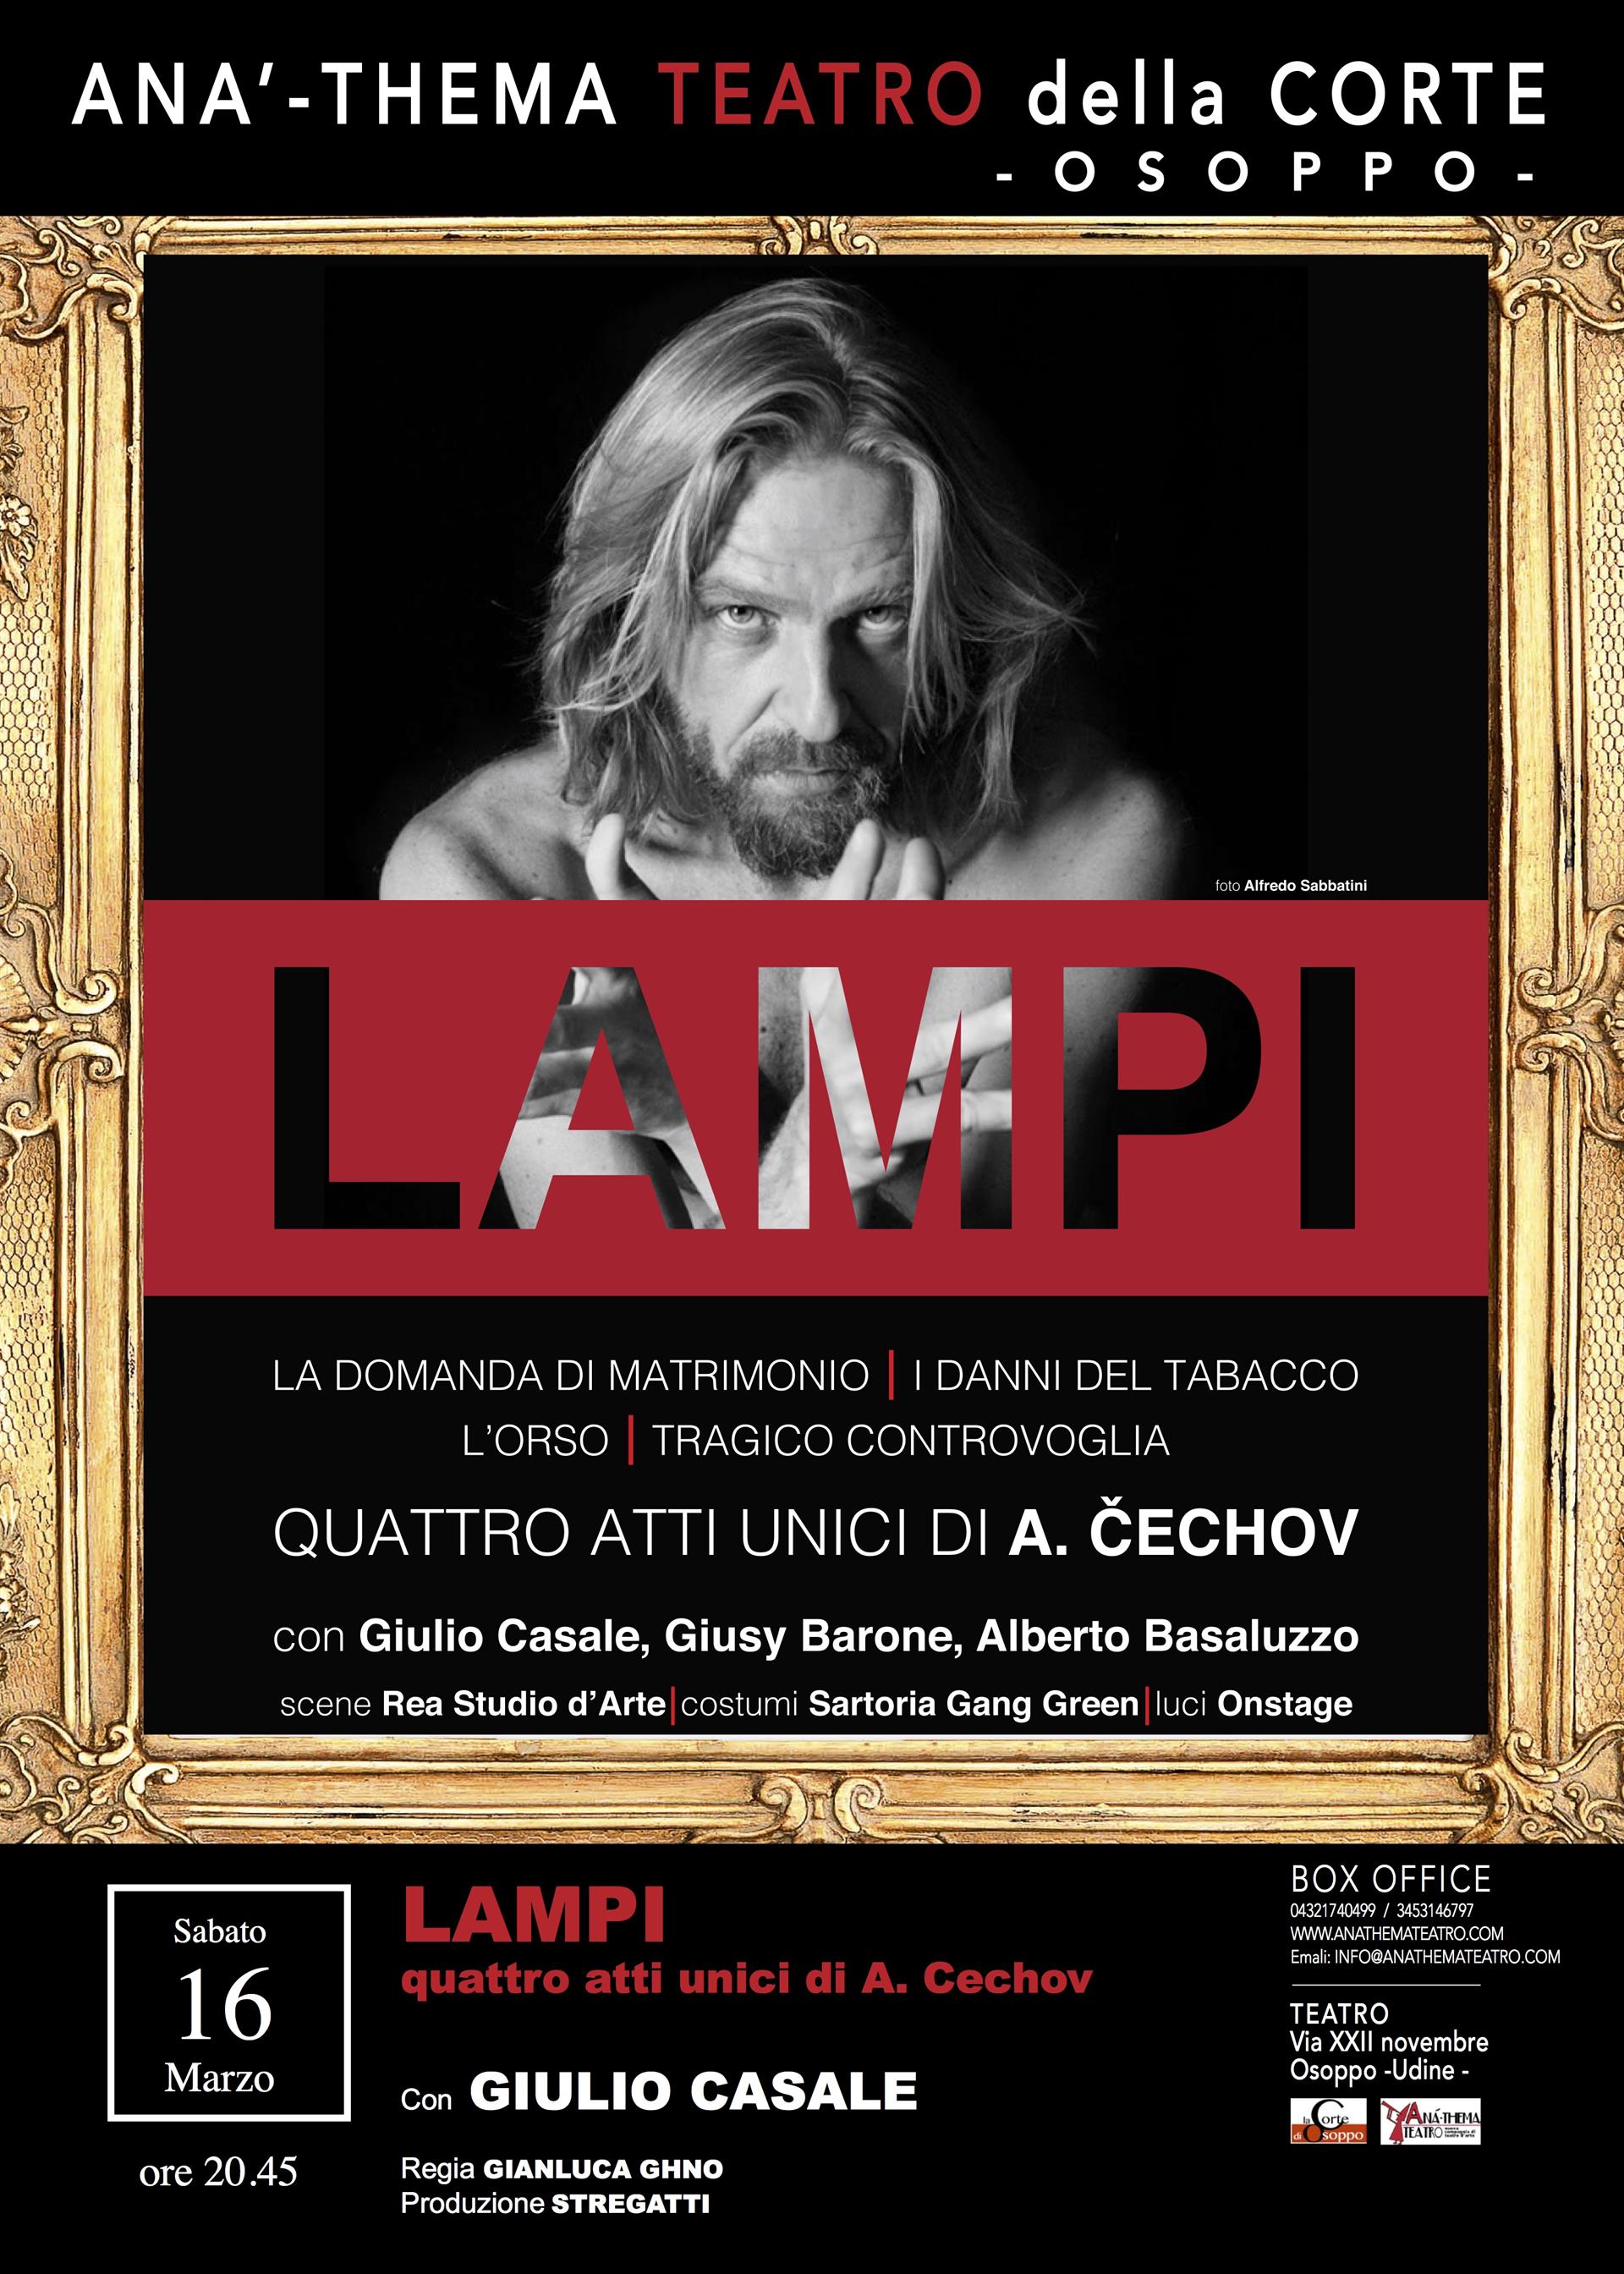 Al momento stai visualizzando “I Lampi” di Giulio Casale sabato 16 marzo al Teatro della Corte di Osoppo